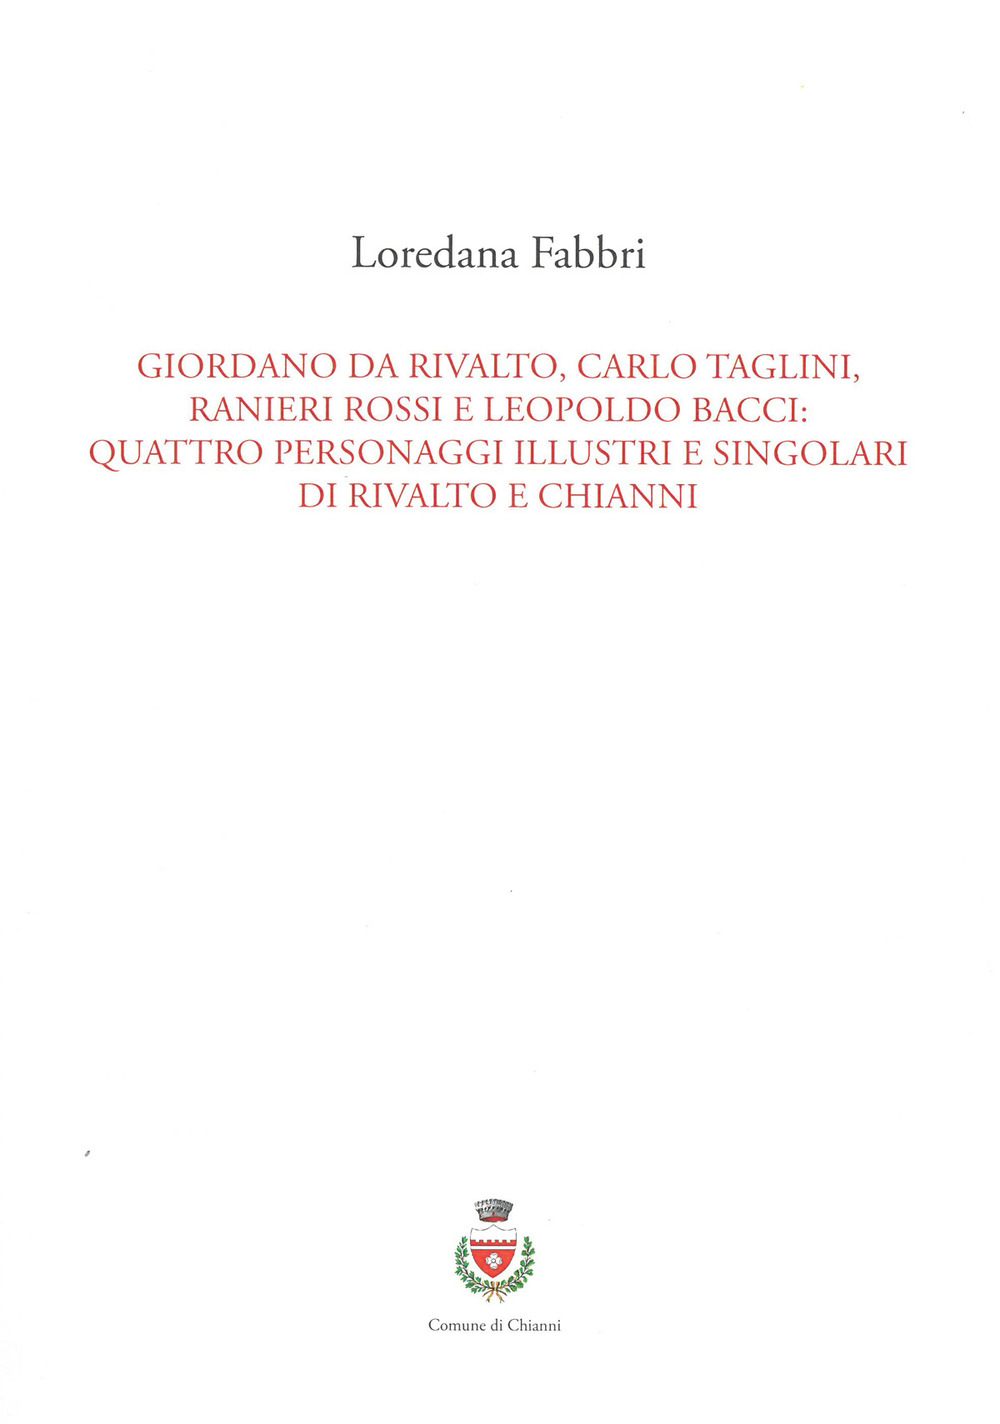 Giordano da Rivalto, Carlo Taglini, Ranieri Rossi e Leopoldo Bacci: quattro personaggi illustri e singolari di Rivalto e Chianni